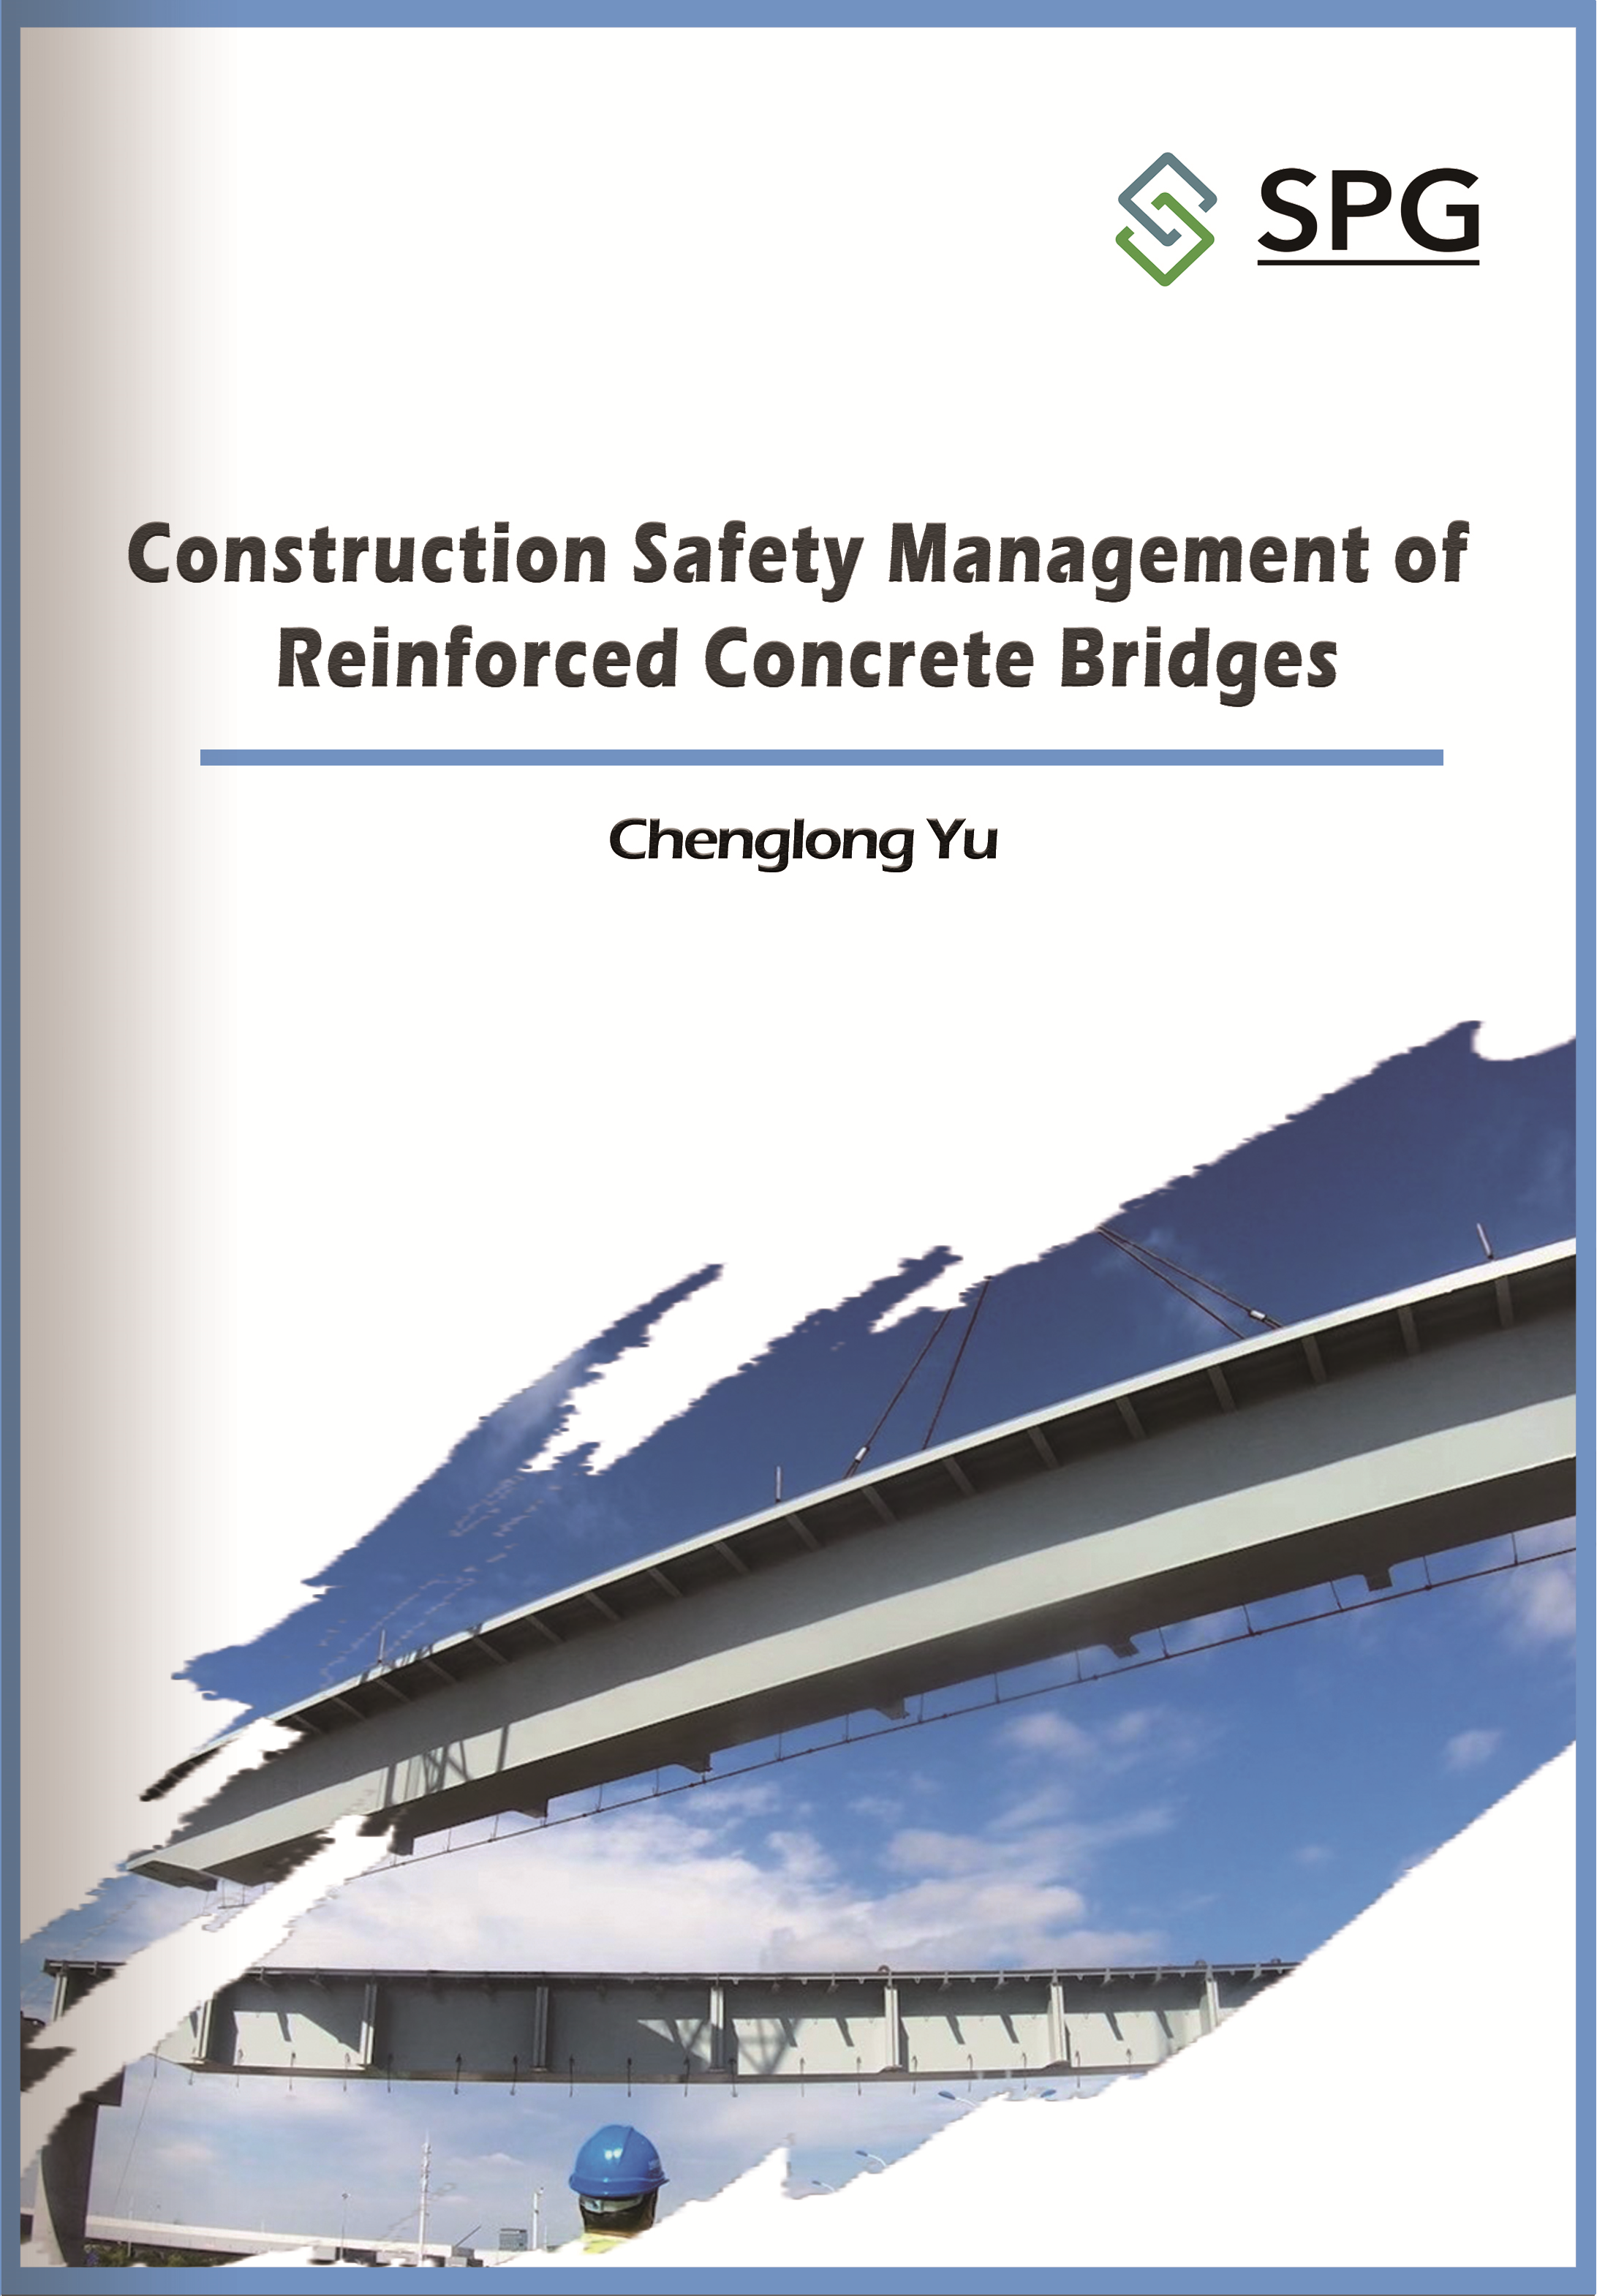 Construction Safety Management of Reinforced Concrete Bridges | Scholar Publishing Group